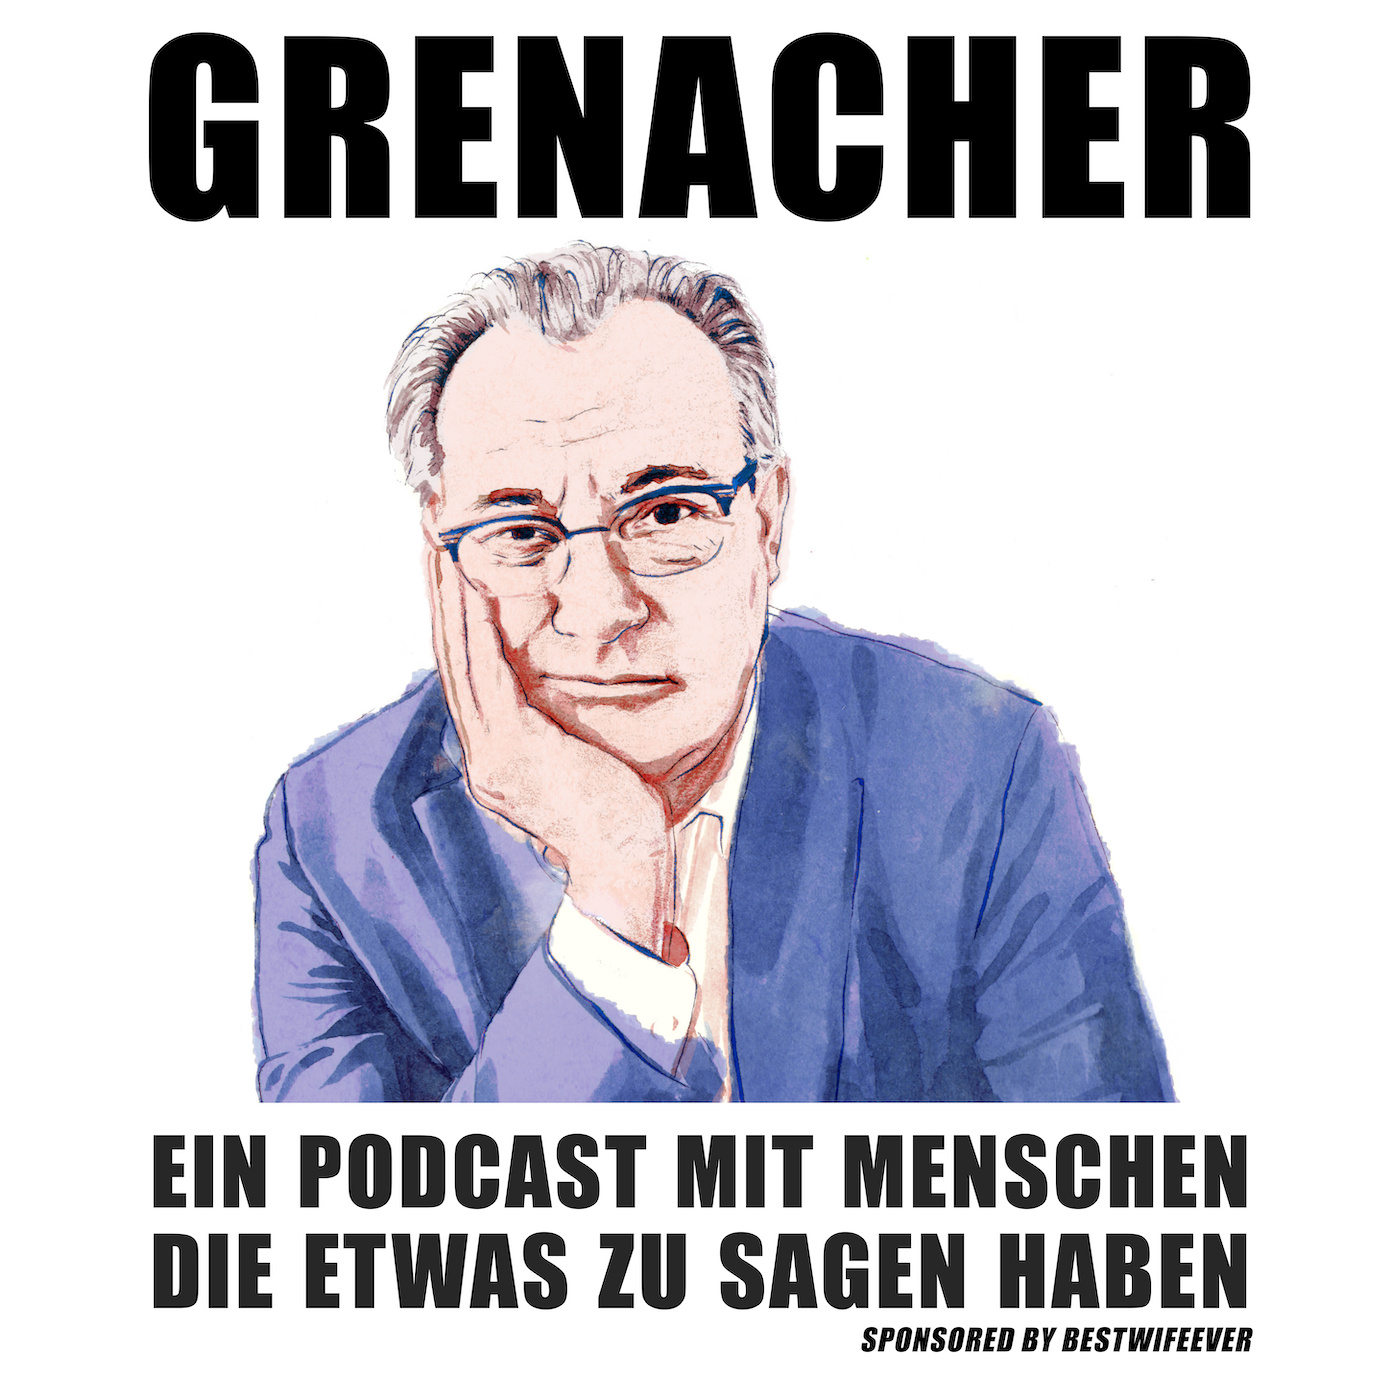 GRENACHER #11: Andrea Worthmann, Medienschaffende, Laufenburg (CH)